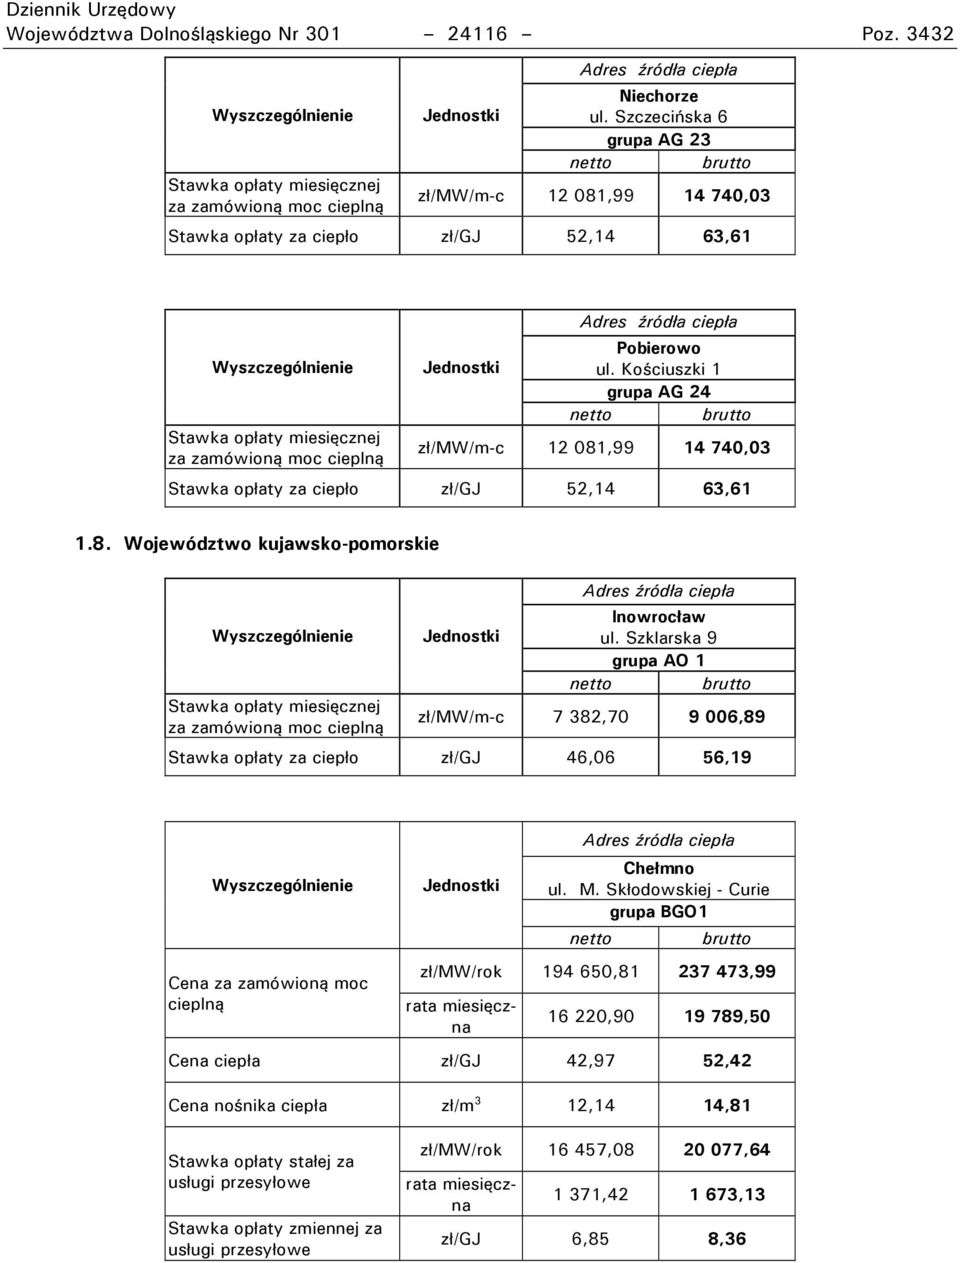 Szklarska 9 grupa AO 1 zł/m /m-c 7 382,70 9 006,89 Stawka opłaty za ciepło zł/gj 46,06 56,19 Chełmno ul. M.